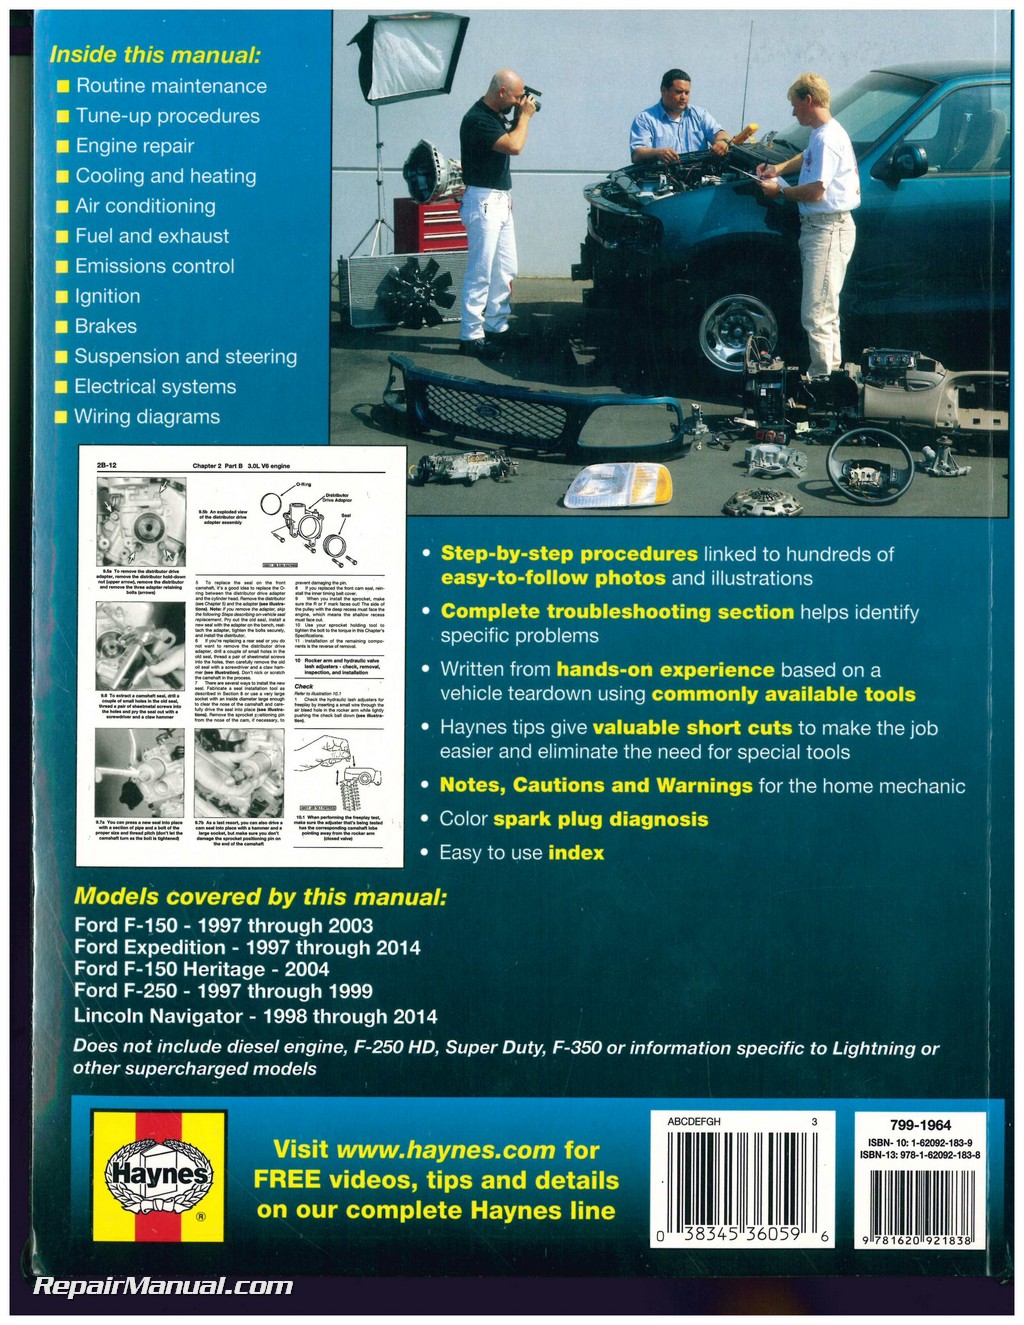 2003 Ford expedition repair manual haynes #2